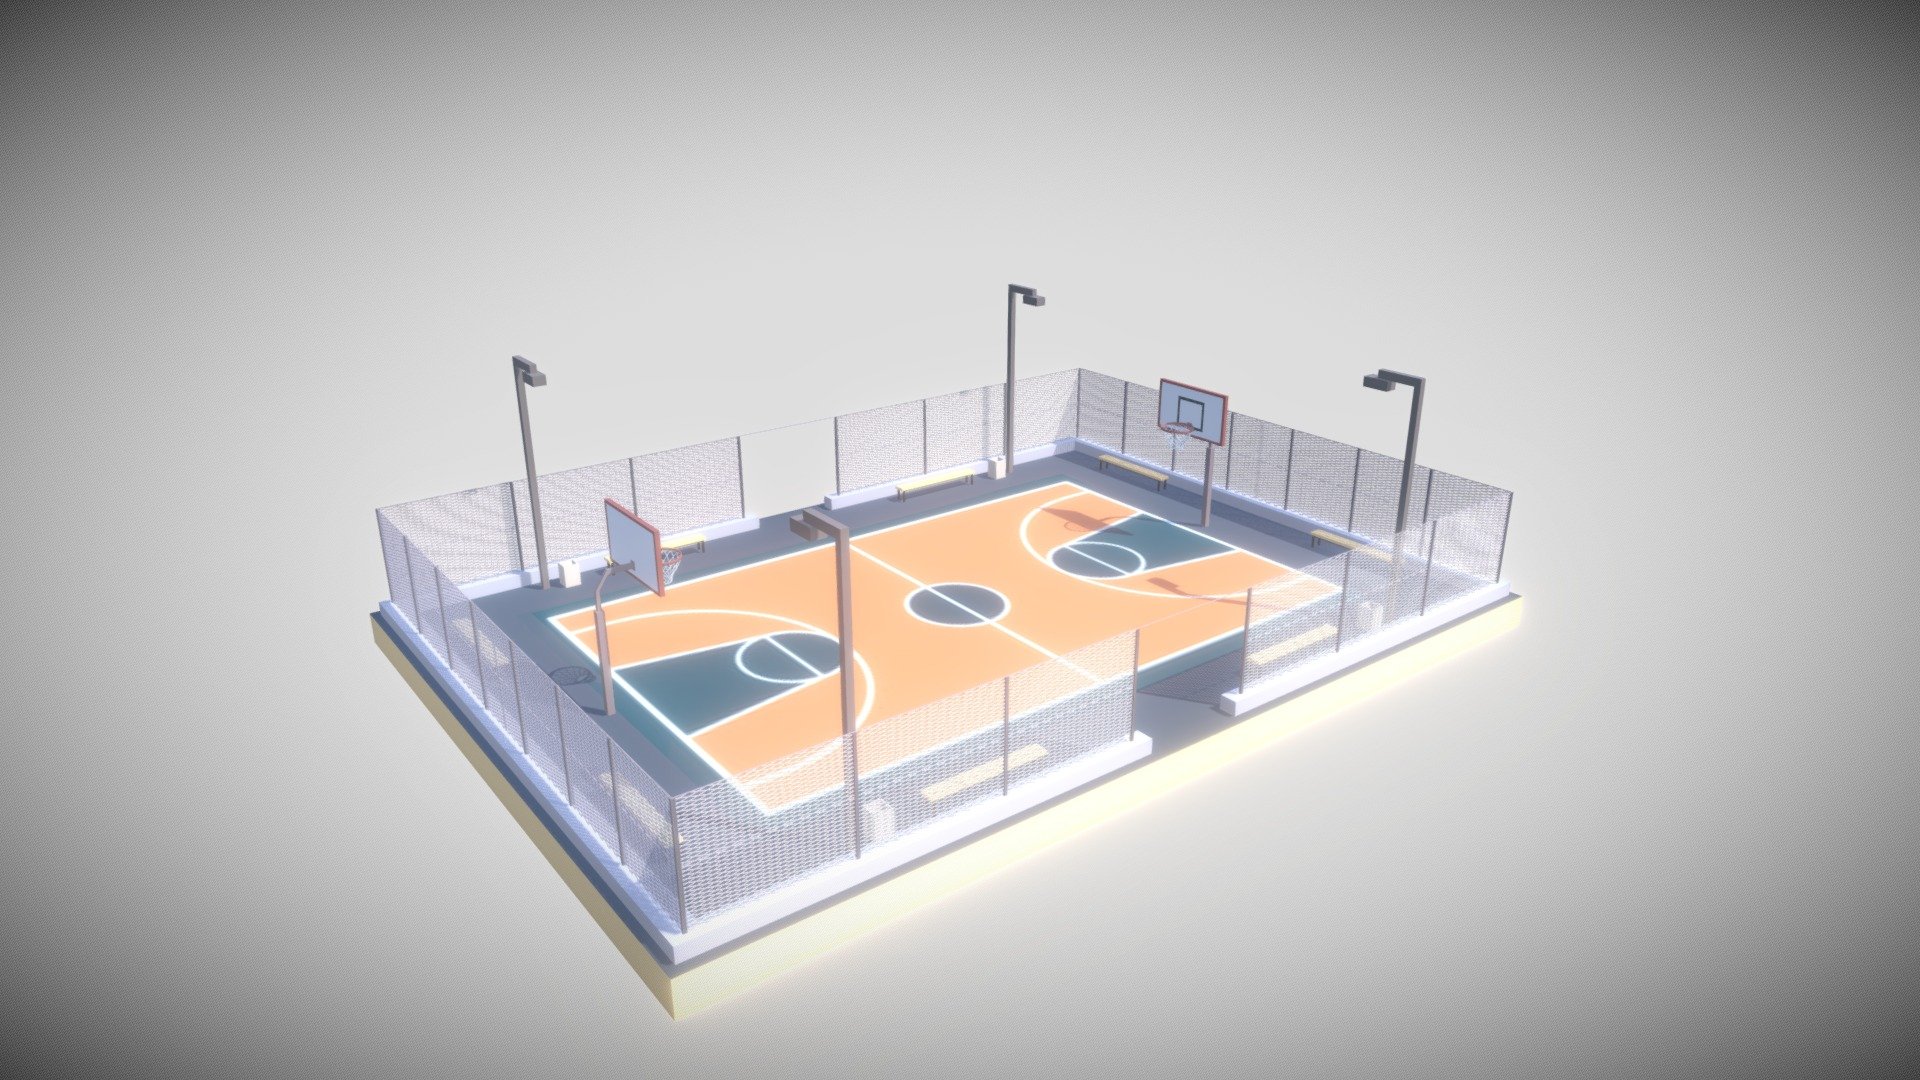 Basketball Court model made in 3D using Blender - Basketball Court - Download Free 3D model by Klieg3D 3d model